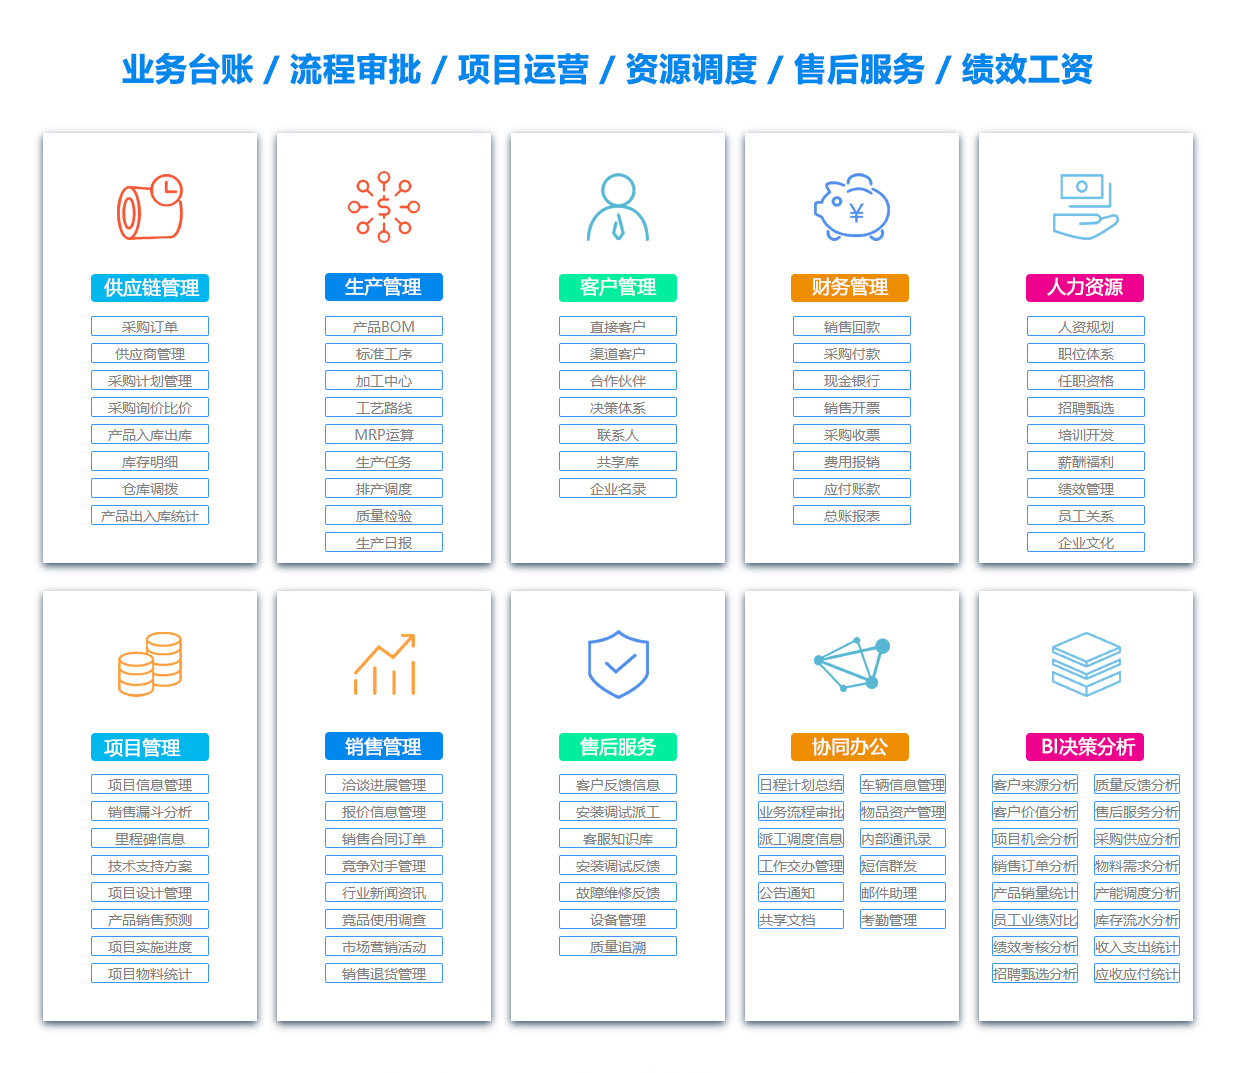 广东SCM:供应链管理系统